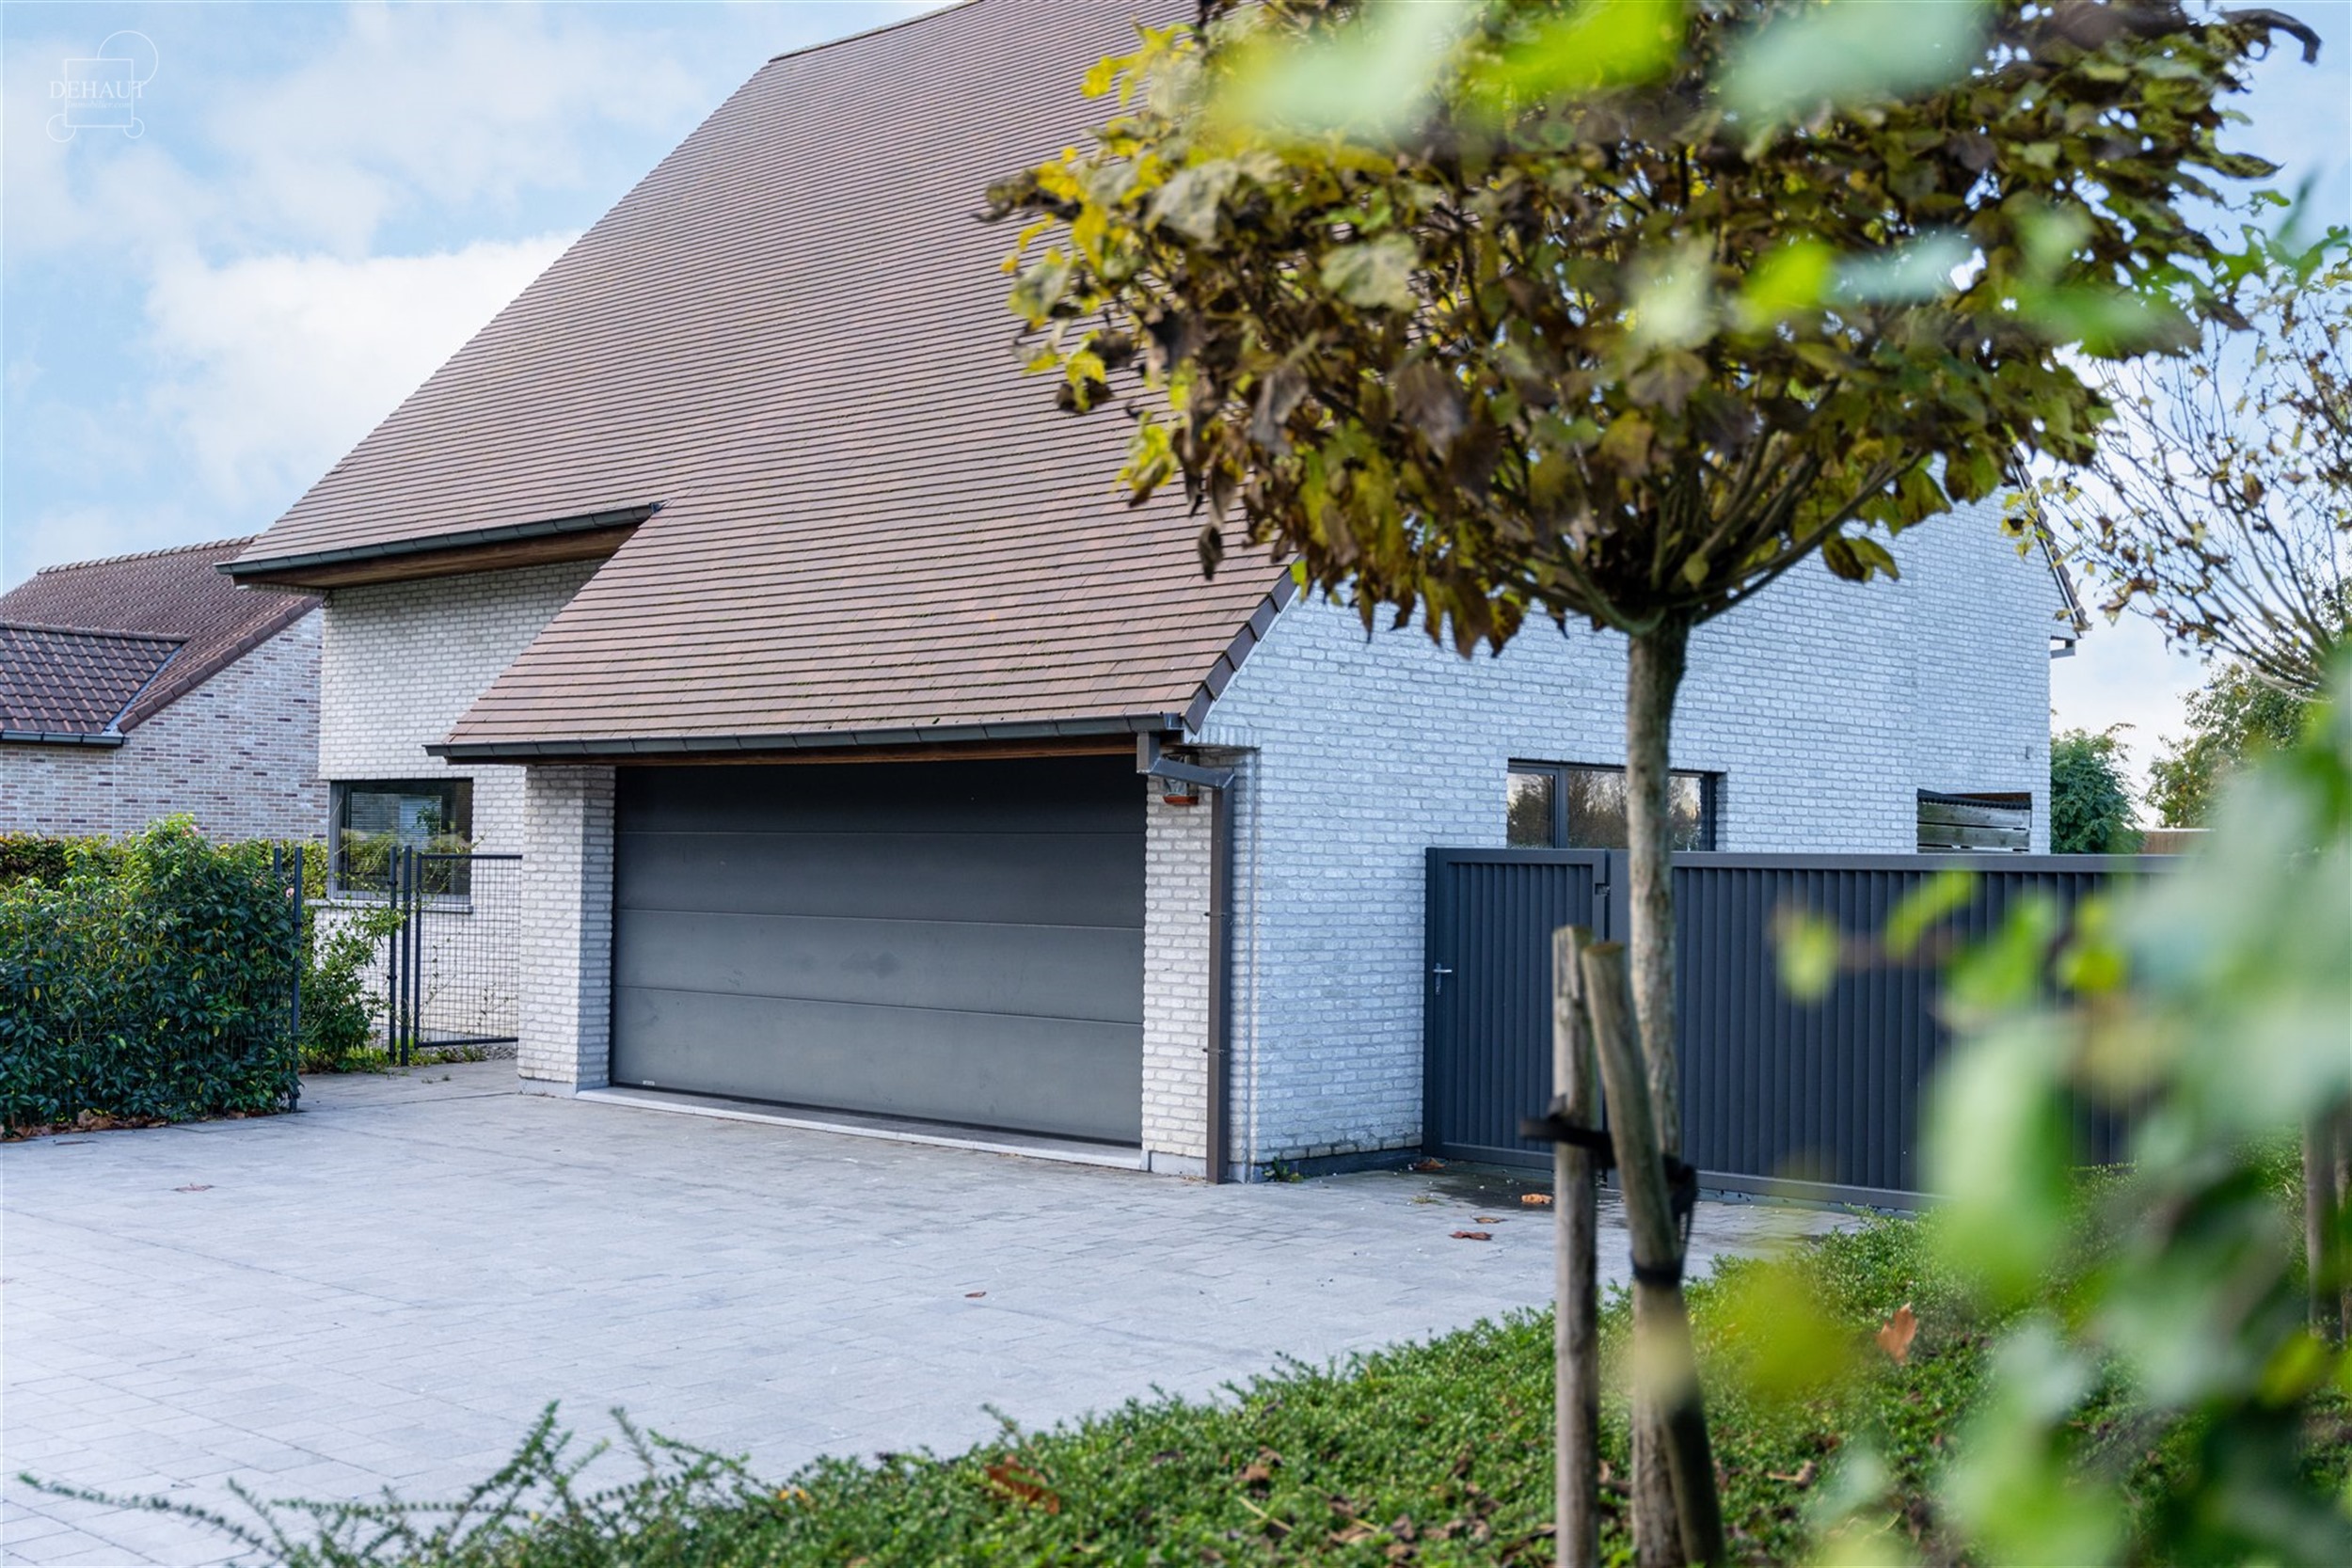 Magnifique maison individuelle avec garage et parking privé érigée sur une parcelle de terrain d'env. 1.355m².
Se compose au rez-de-chaussée d'u...